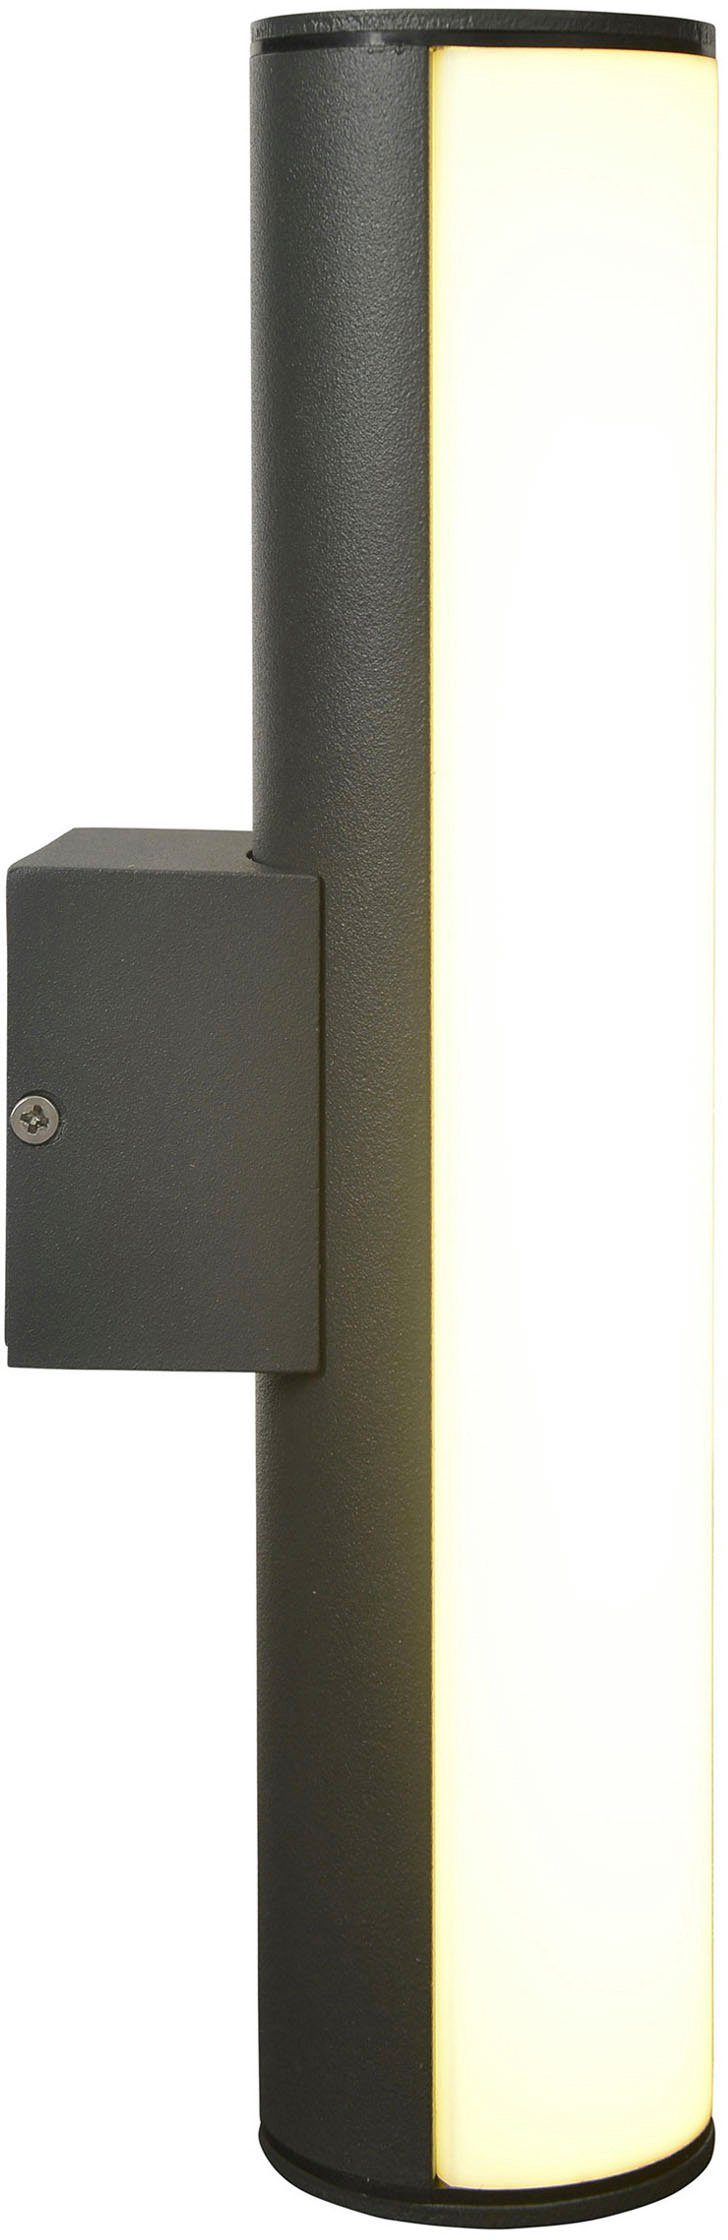 näve LED Außen-Wandleuchte Flair, Warmweiß, Länge warmweißes Licht Aluminium 30cm IP54 dunkelgrau